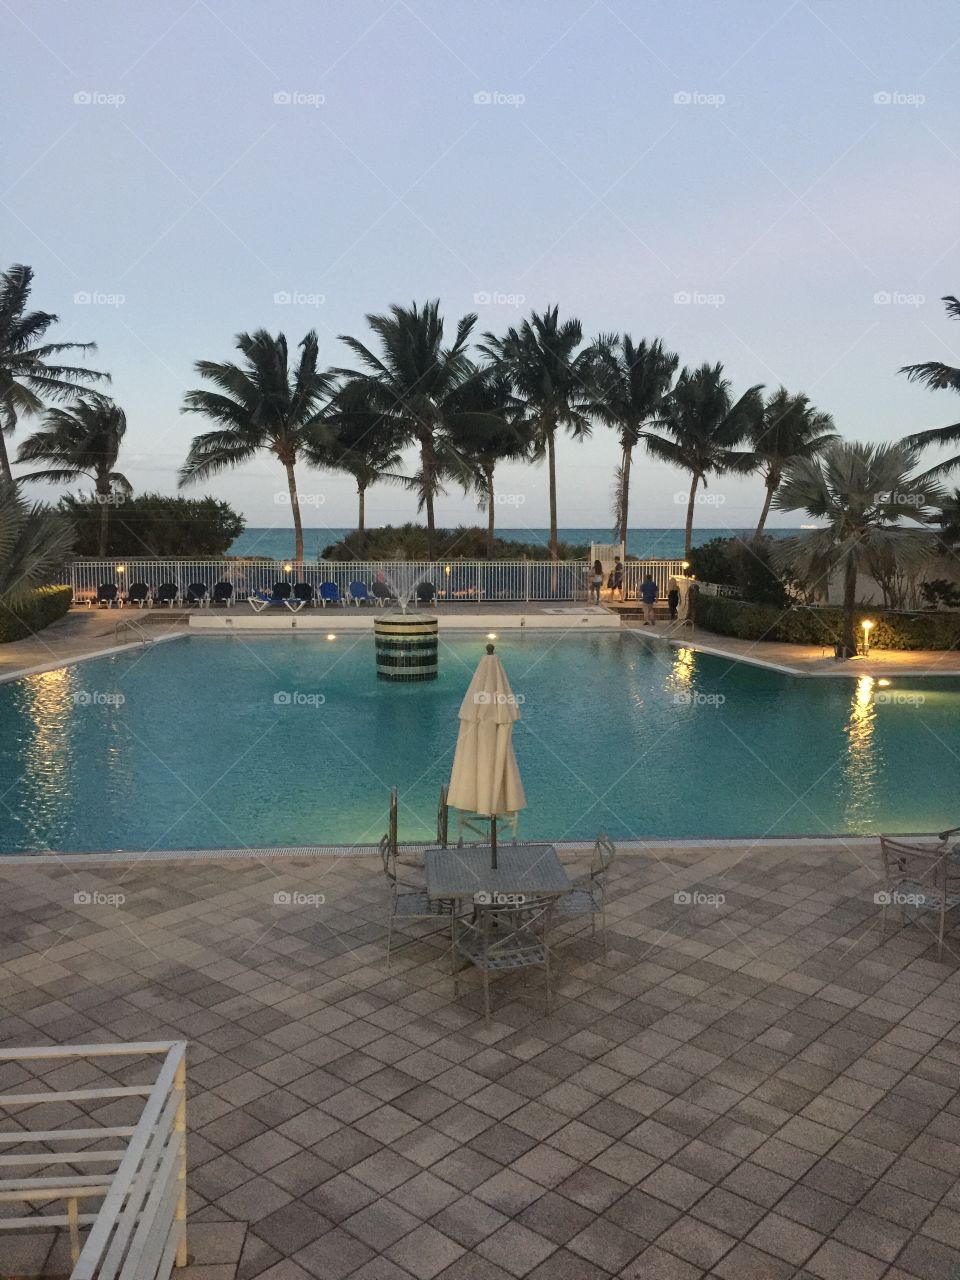 Miami Beach pool